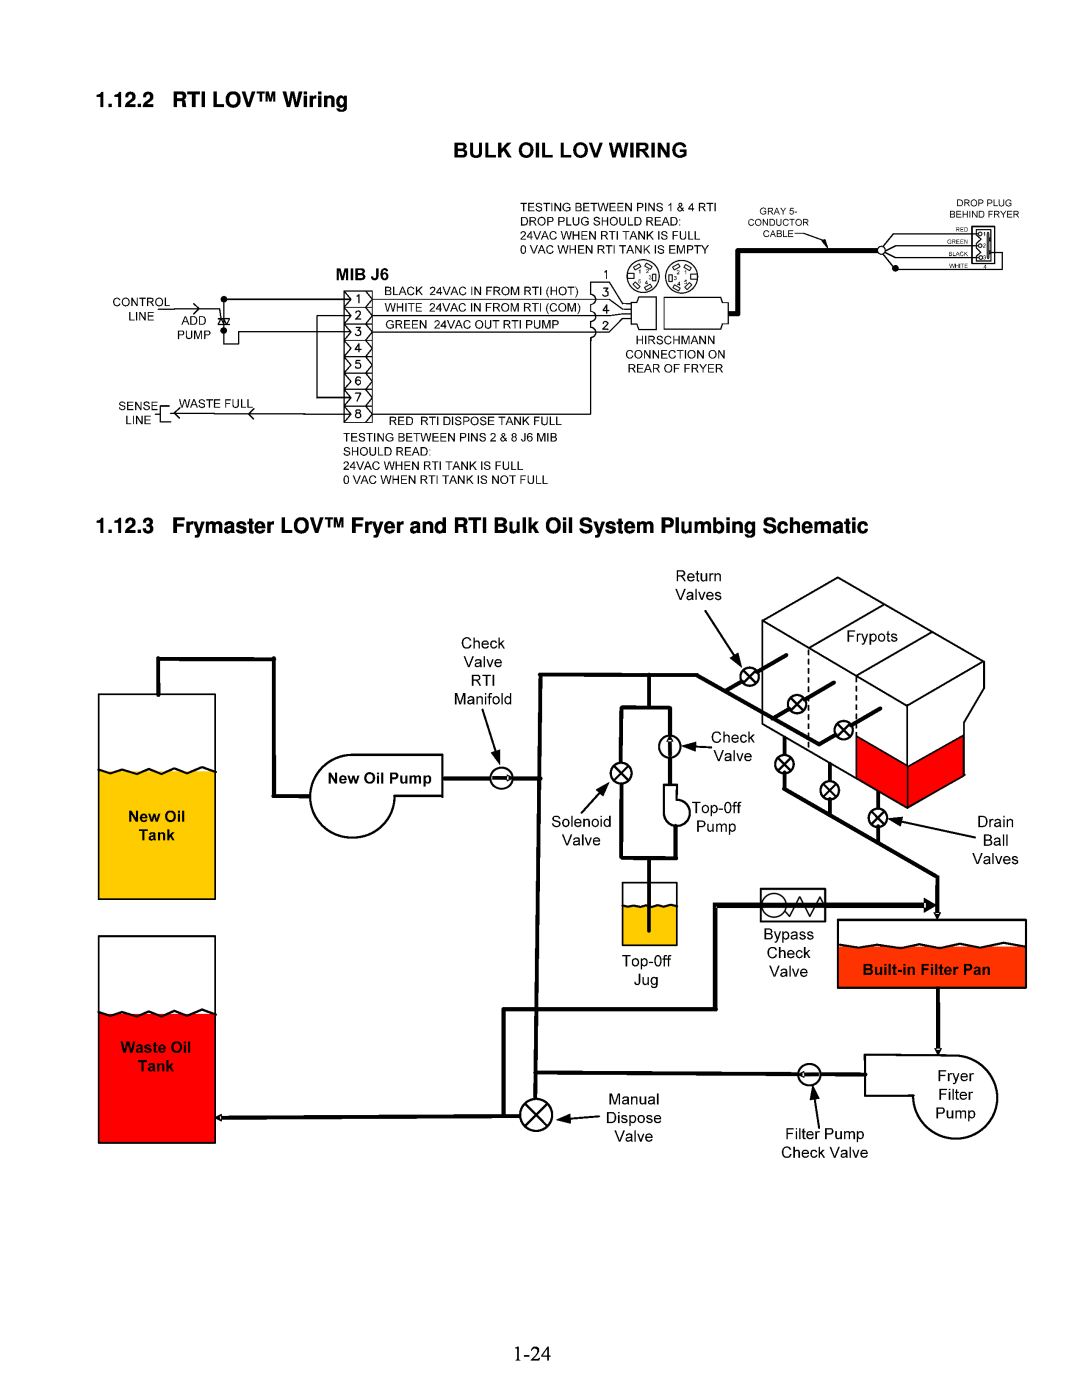 Frymaster BIELA14 manual RTI LOV Wiring 